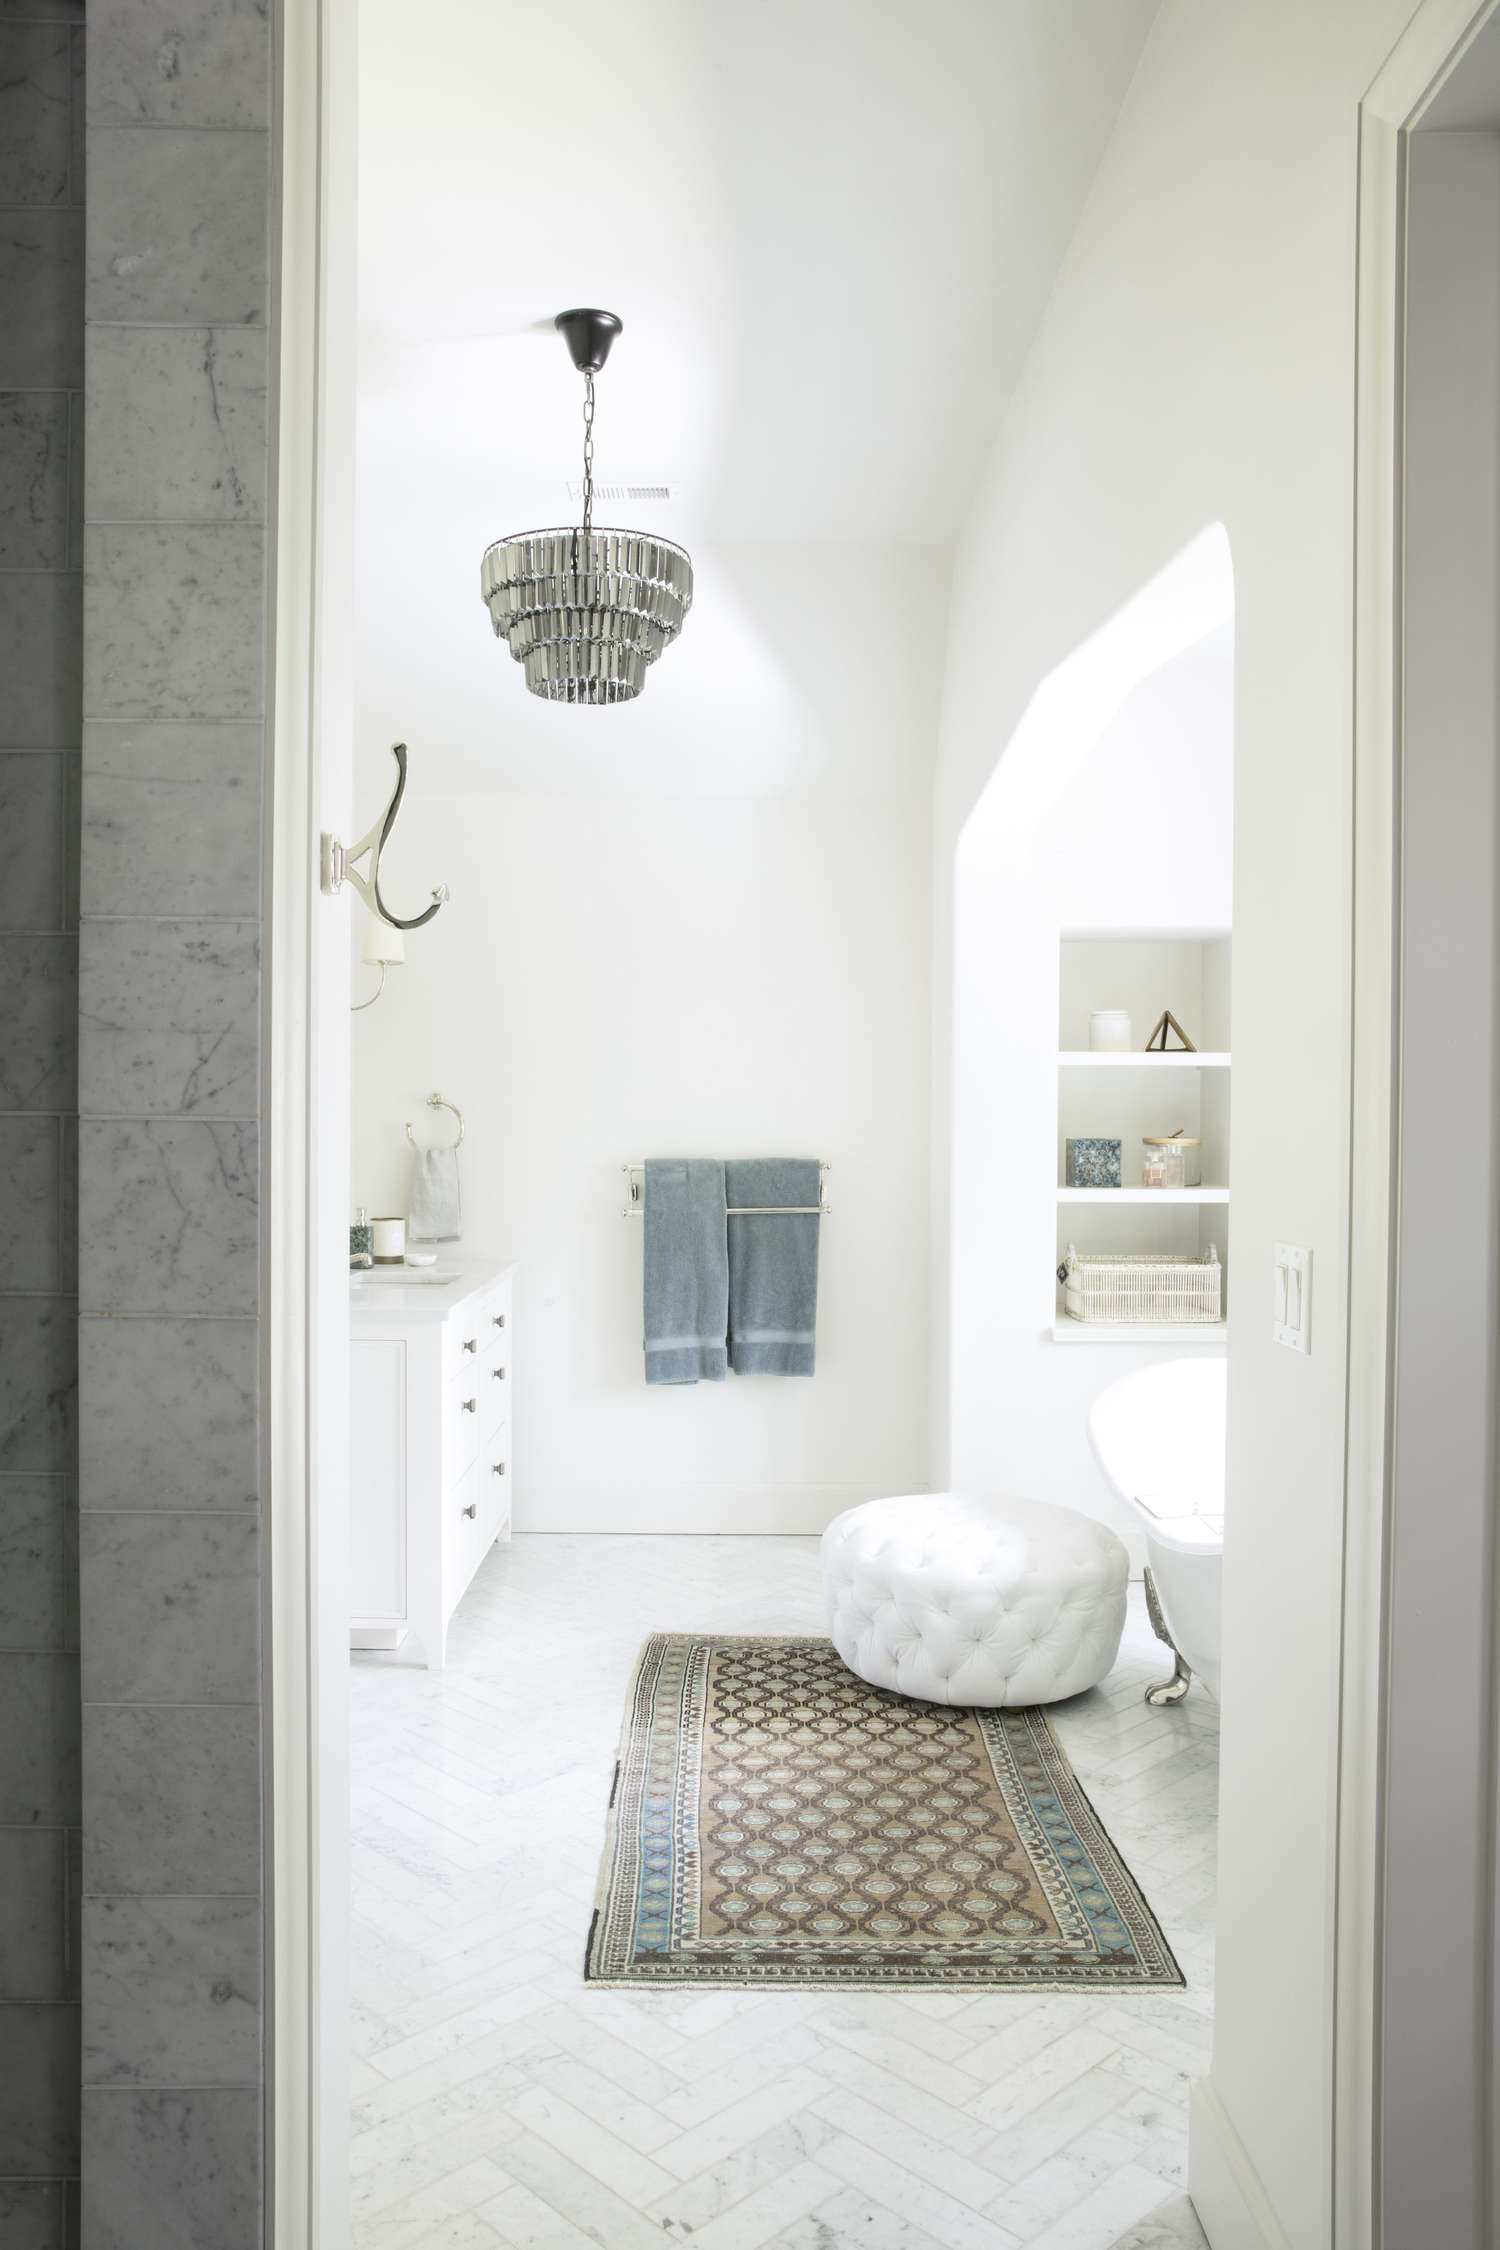 Ein großes Badezimmer mit weißem Ottoman, Teppich und silbernem Kronleuchter